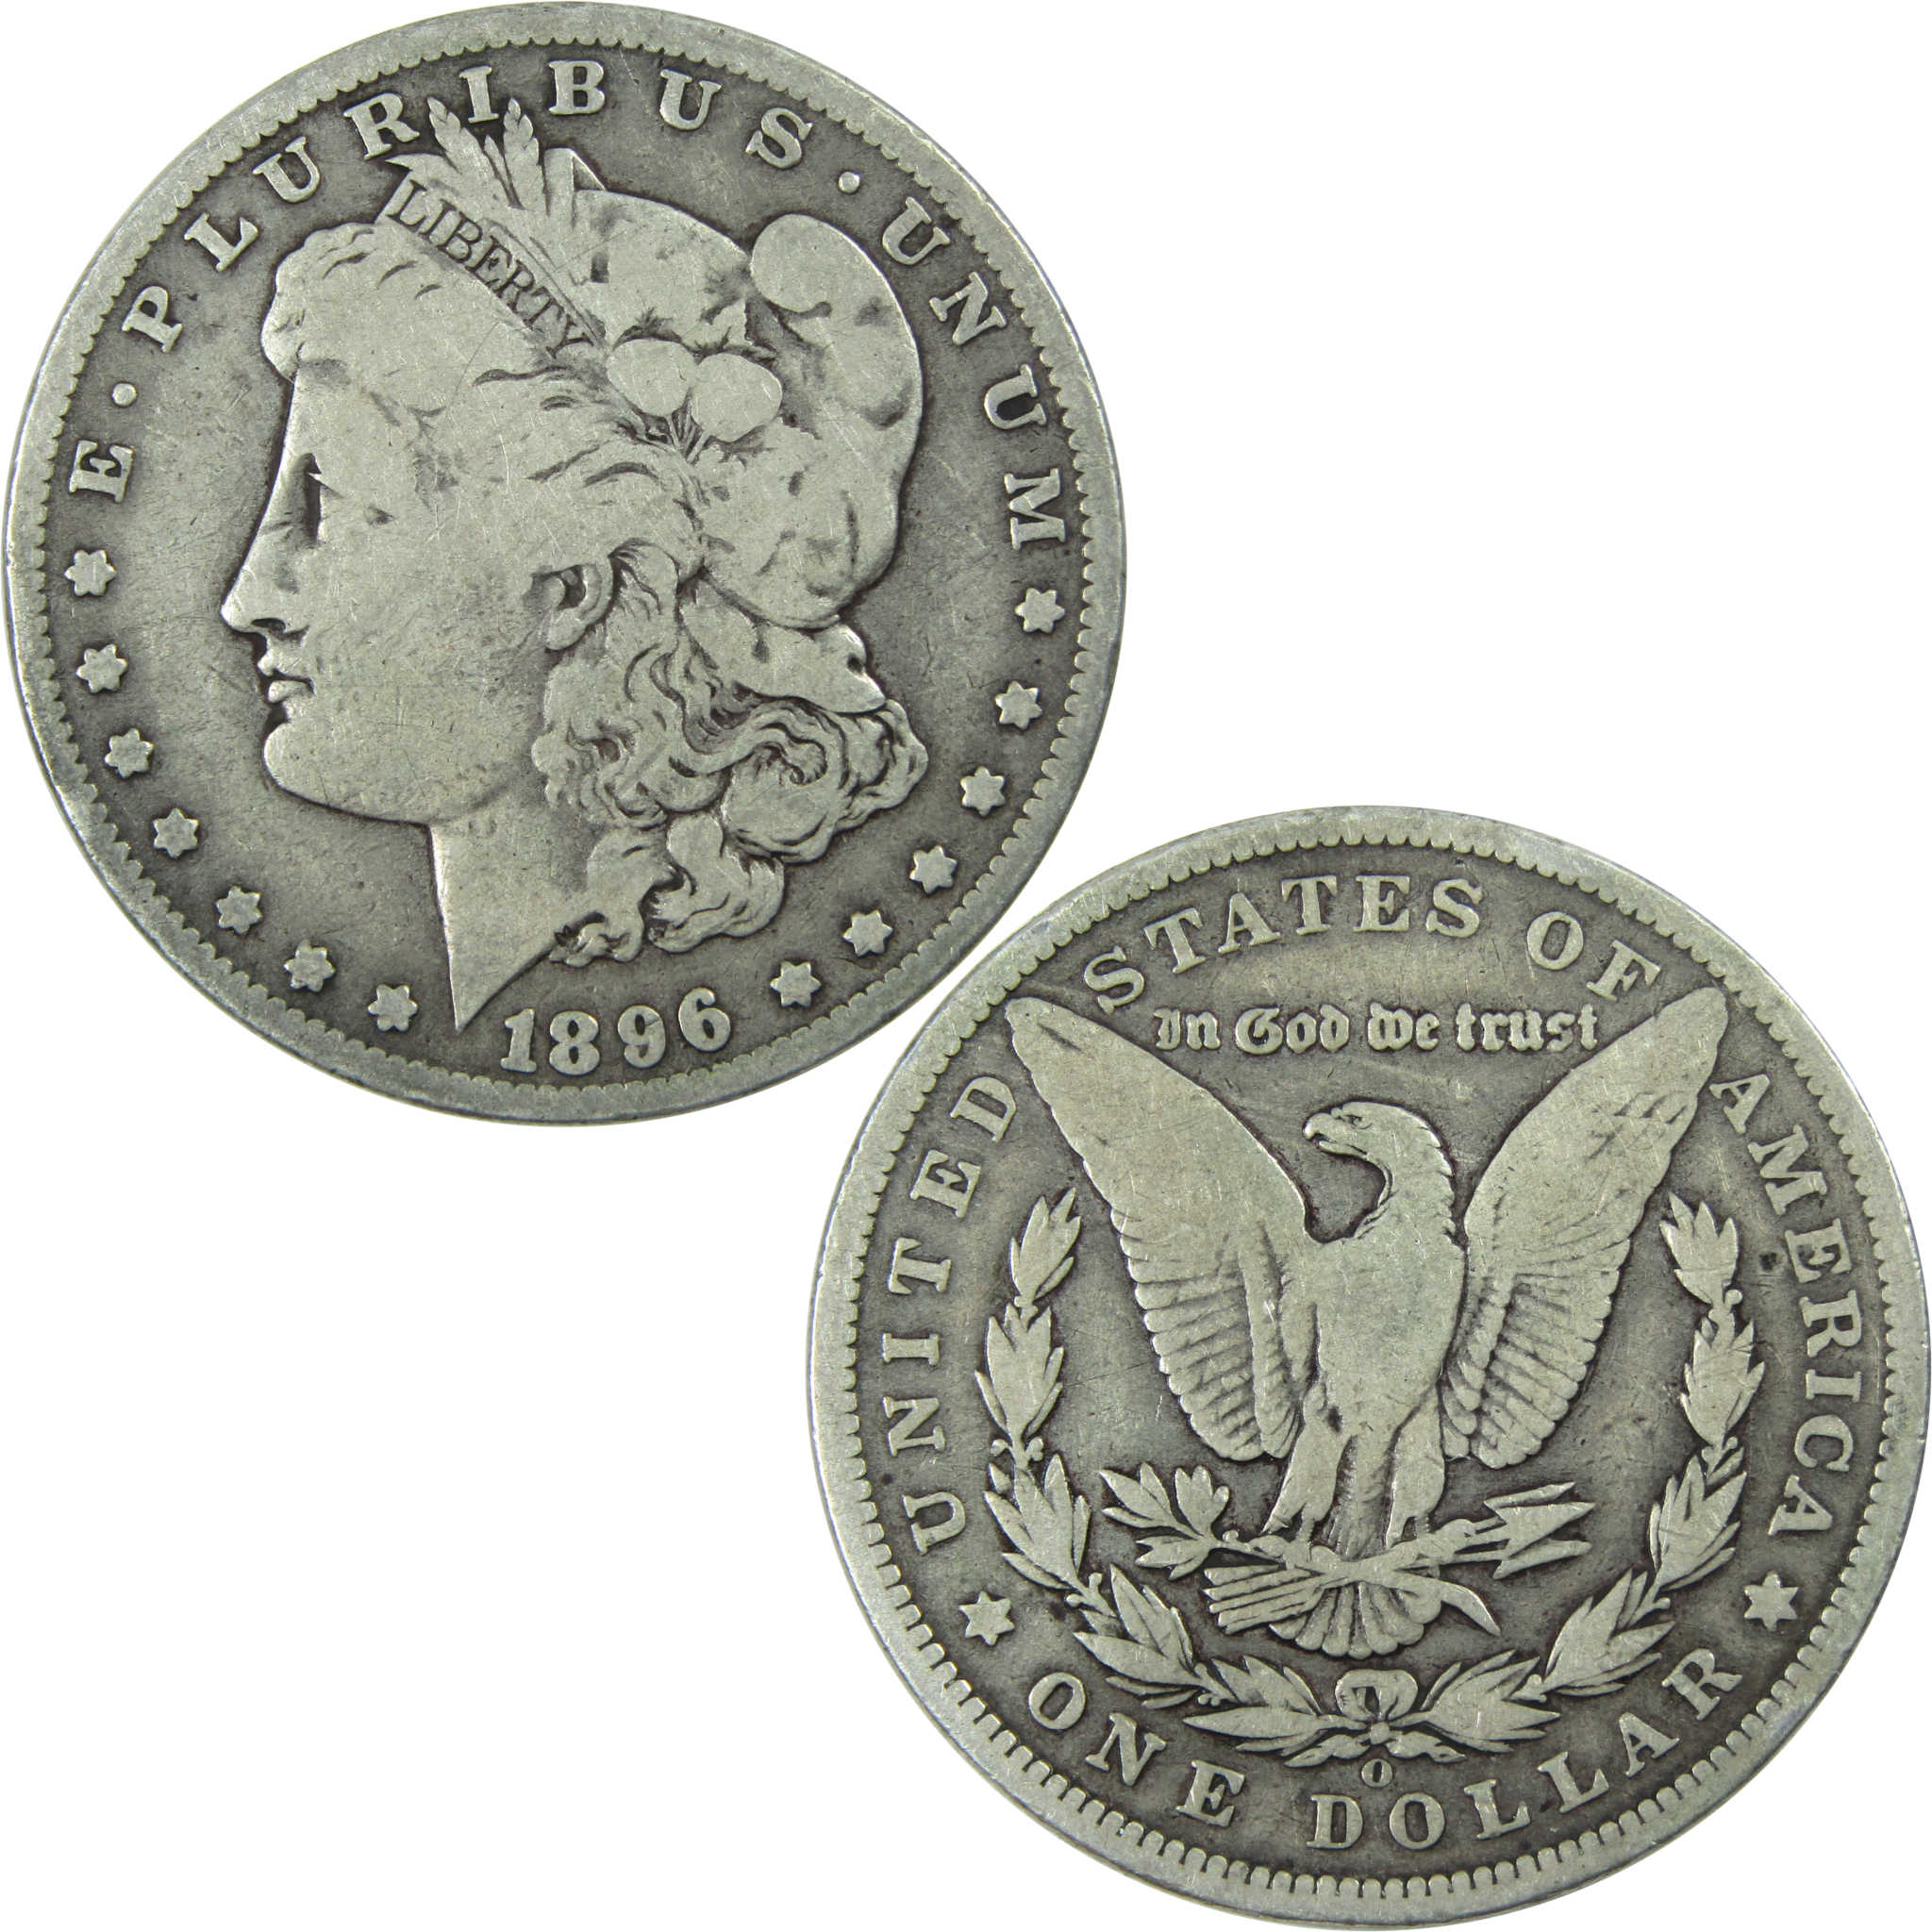 1896 O Morgan Dollar VG Very Good Silver $1 Coin SKU:I13725 - Morgan coin - Morgan silver dollar - Morgan silver dollar for sale - Profile Coins &amp; Collectibles